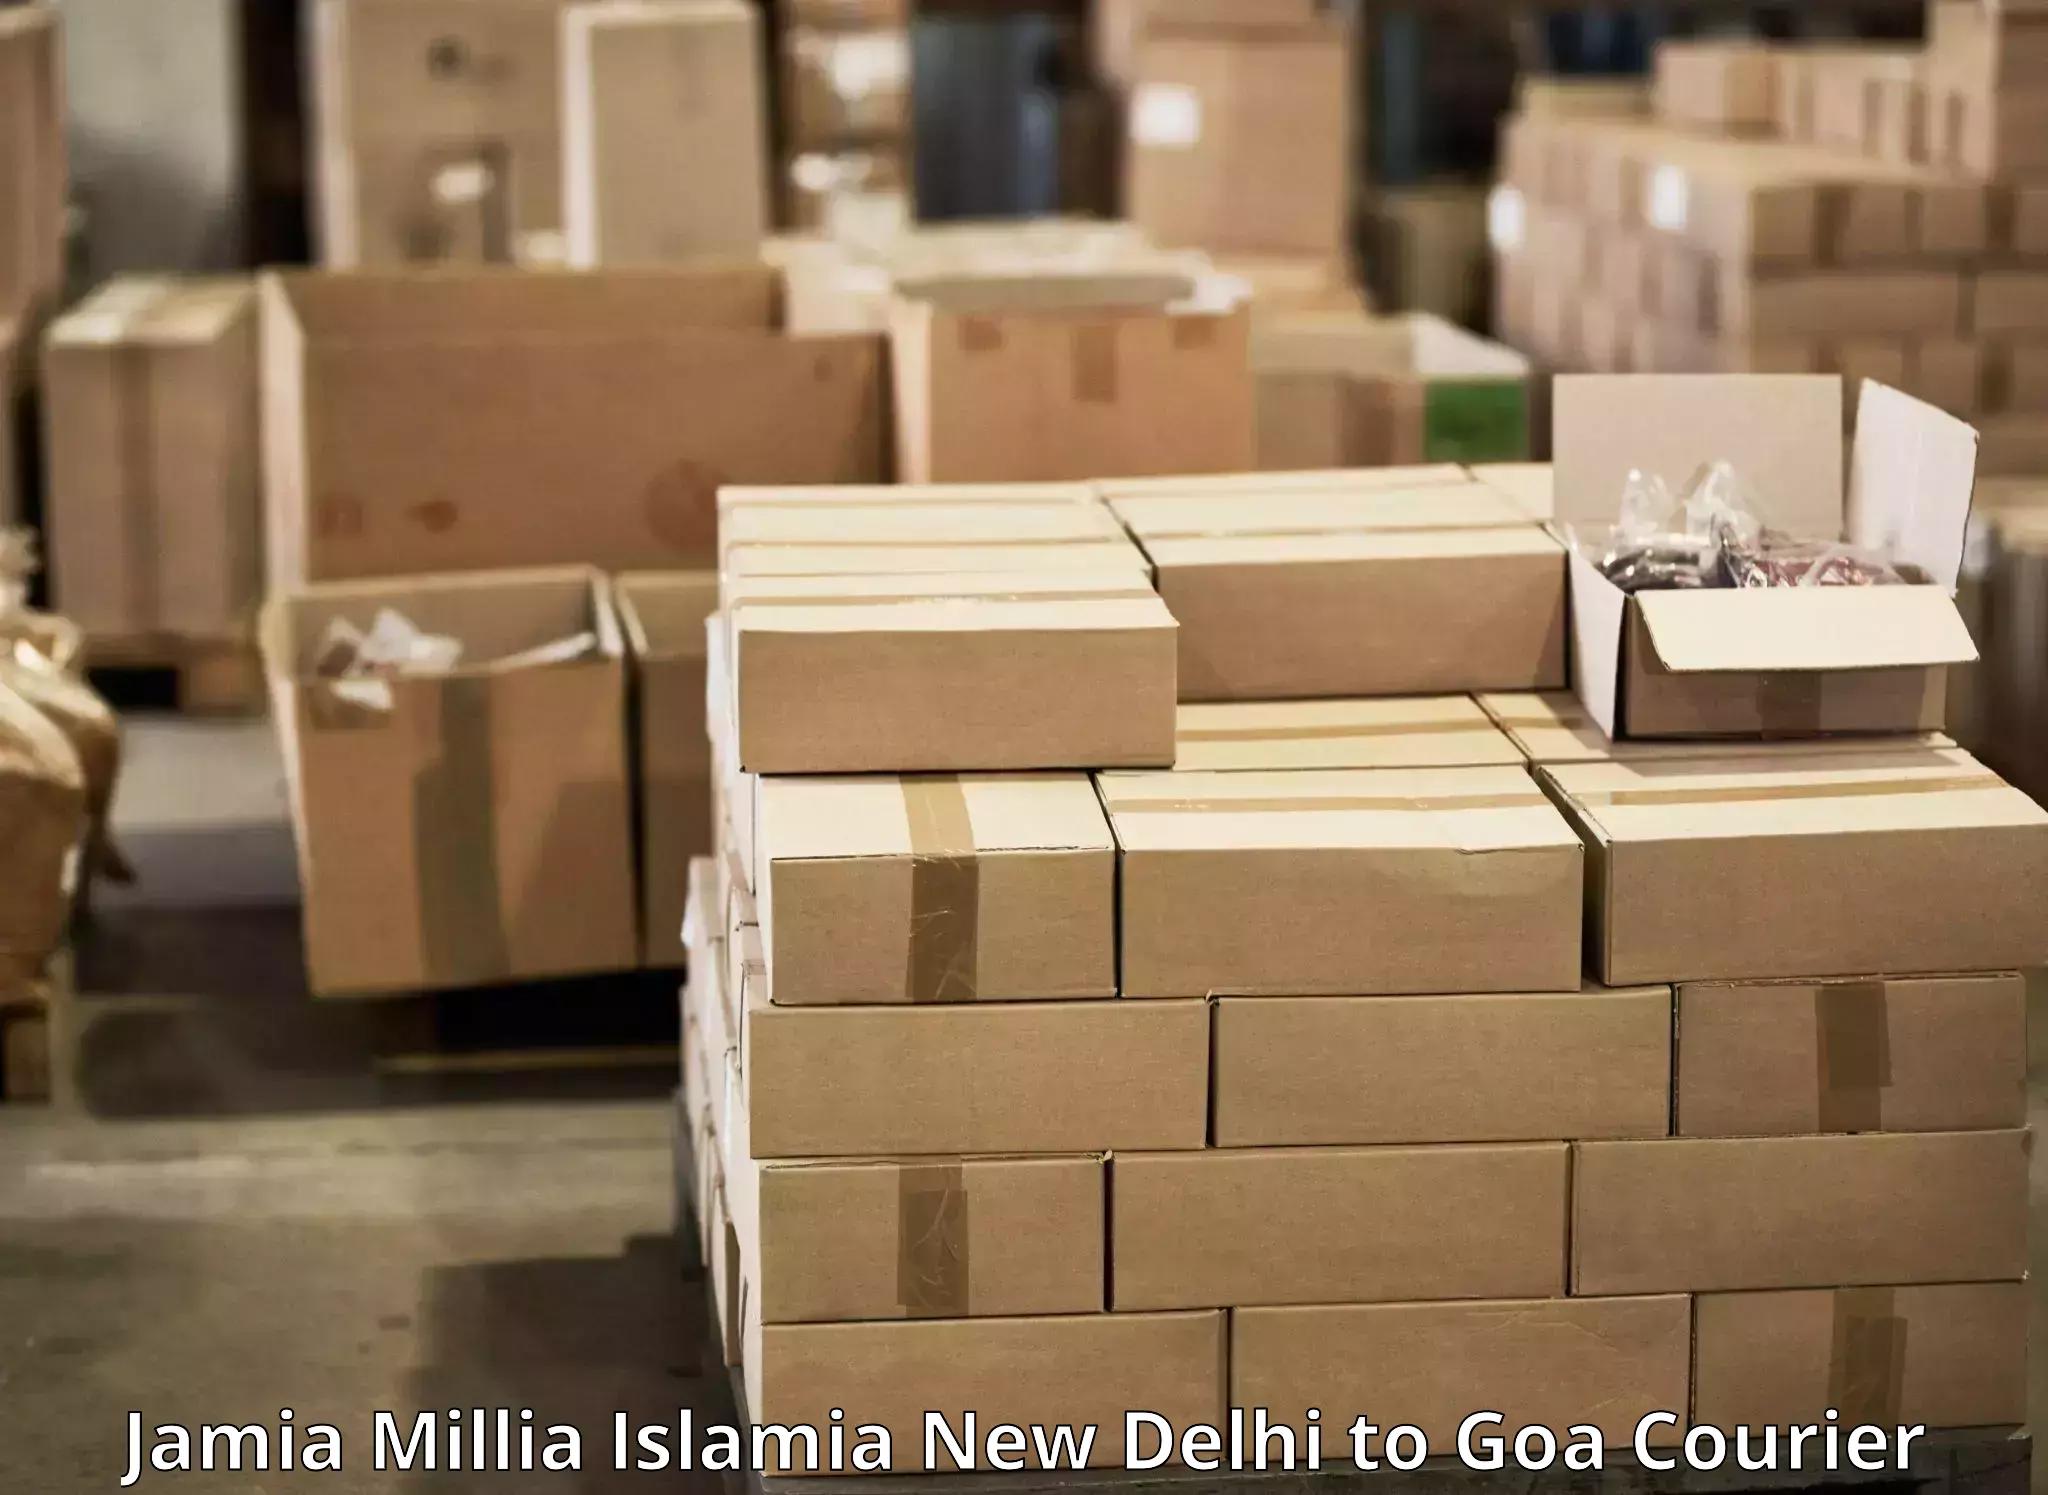 Express package services Jamia Millia Islamia New Delhi to Margao